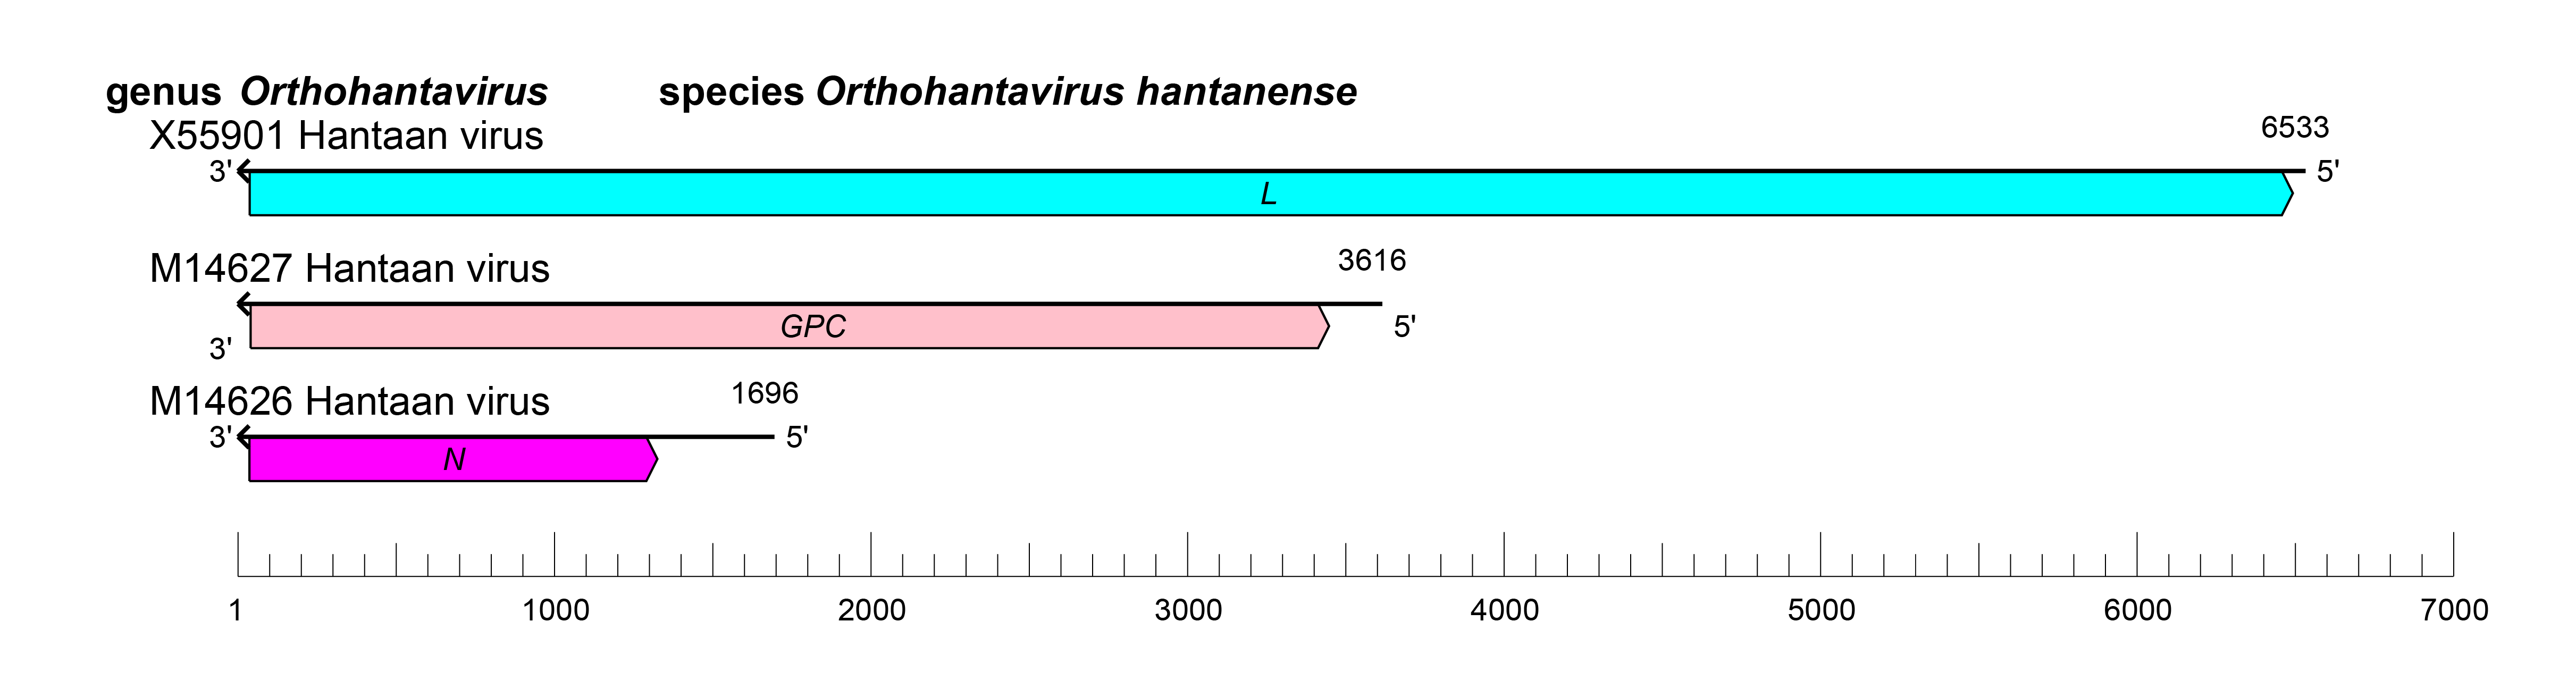 Orthohantovirus genome